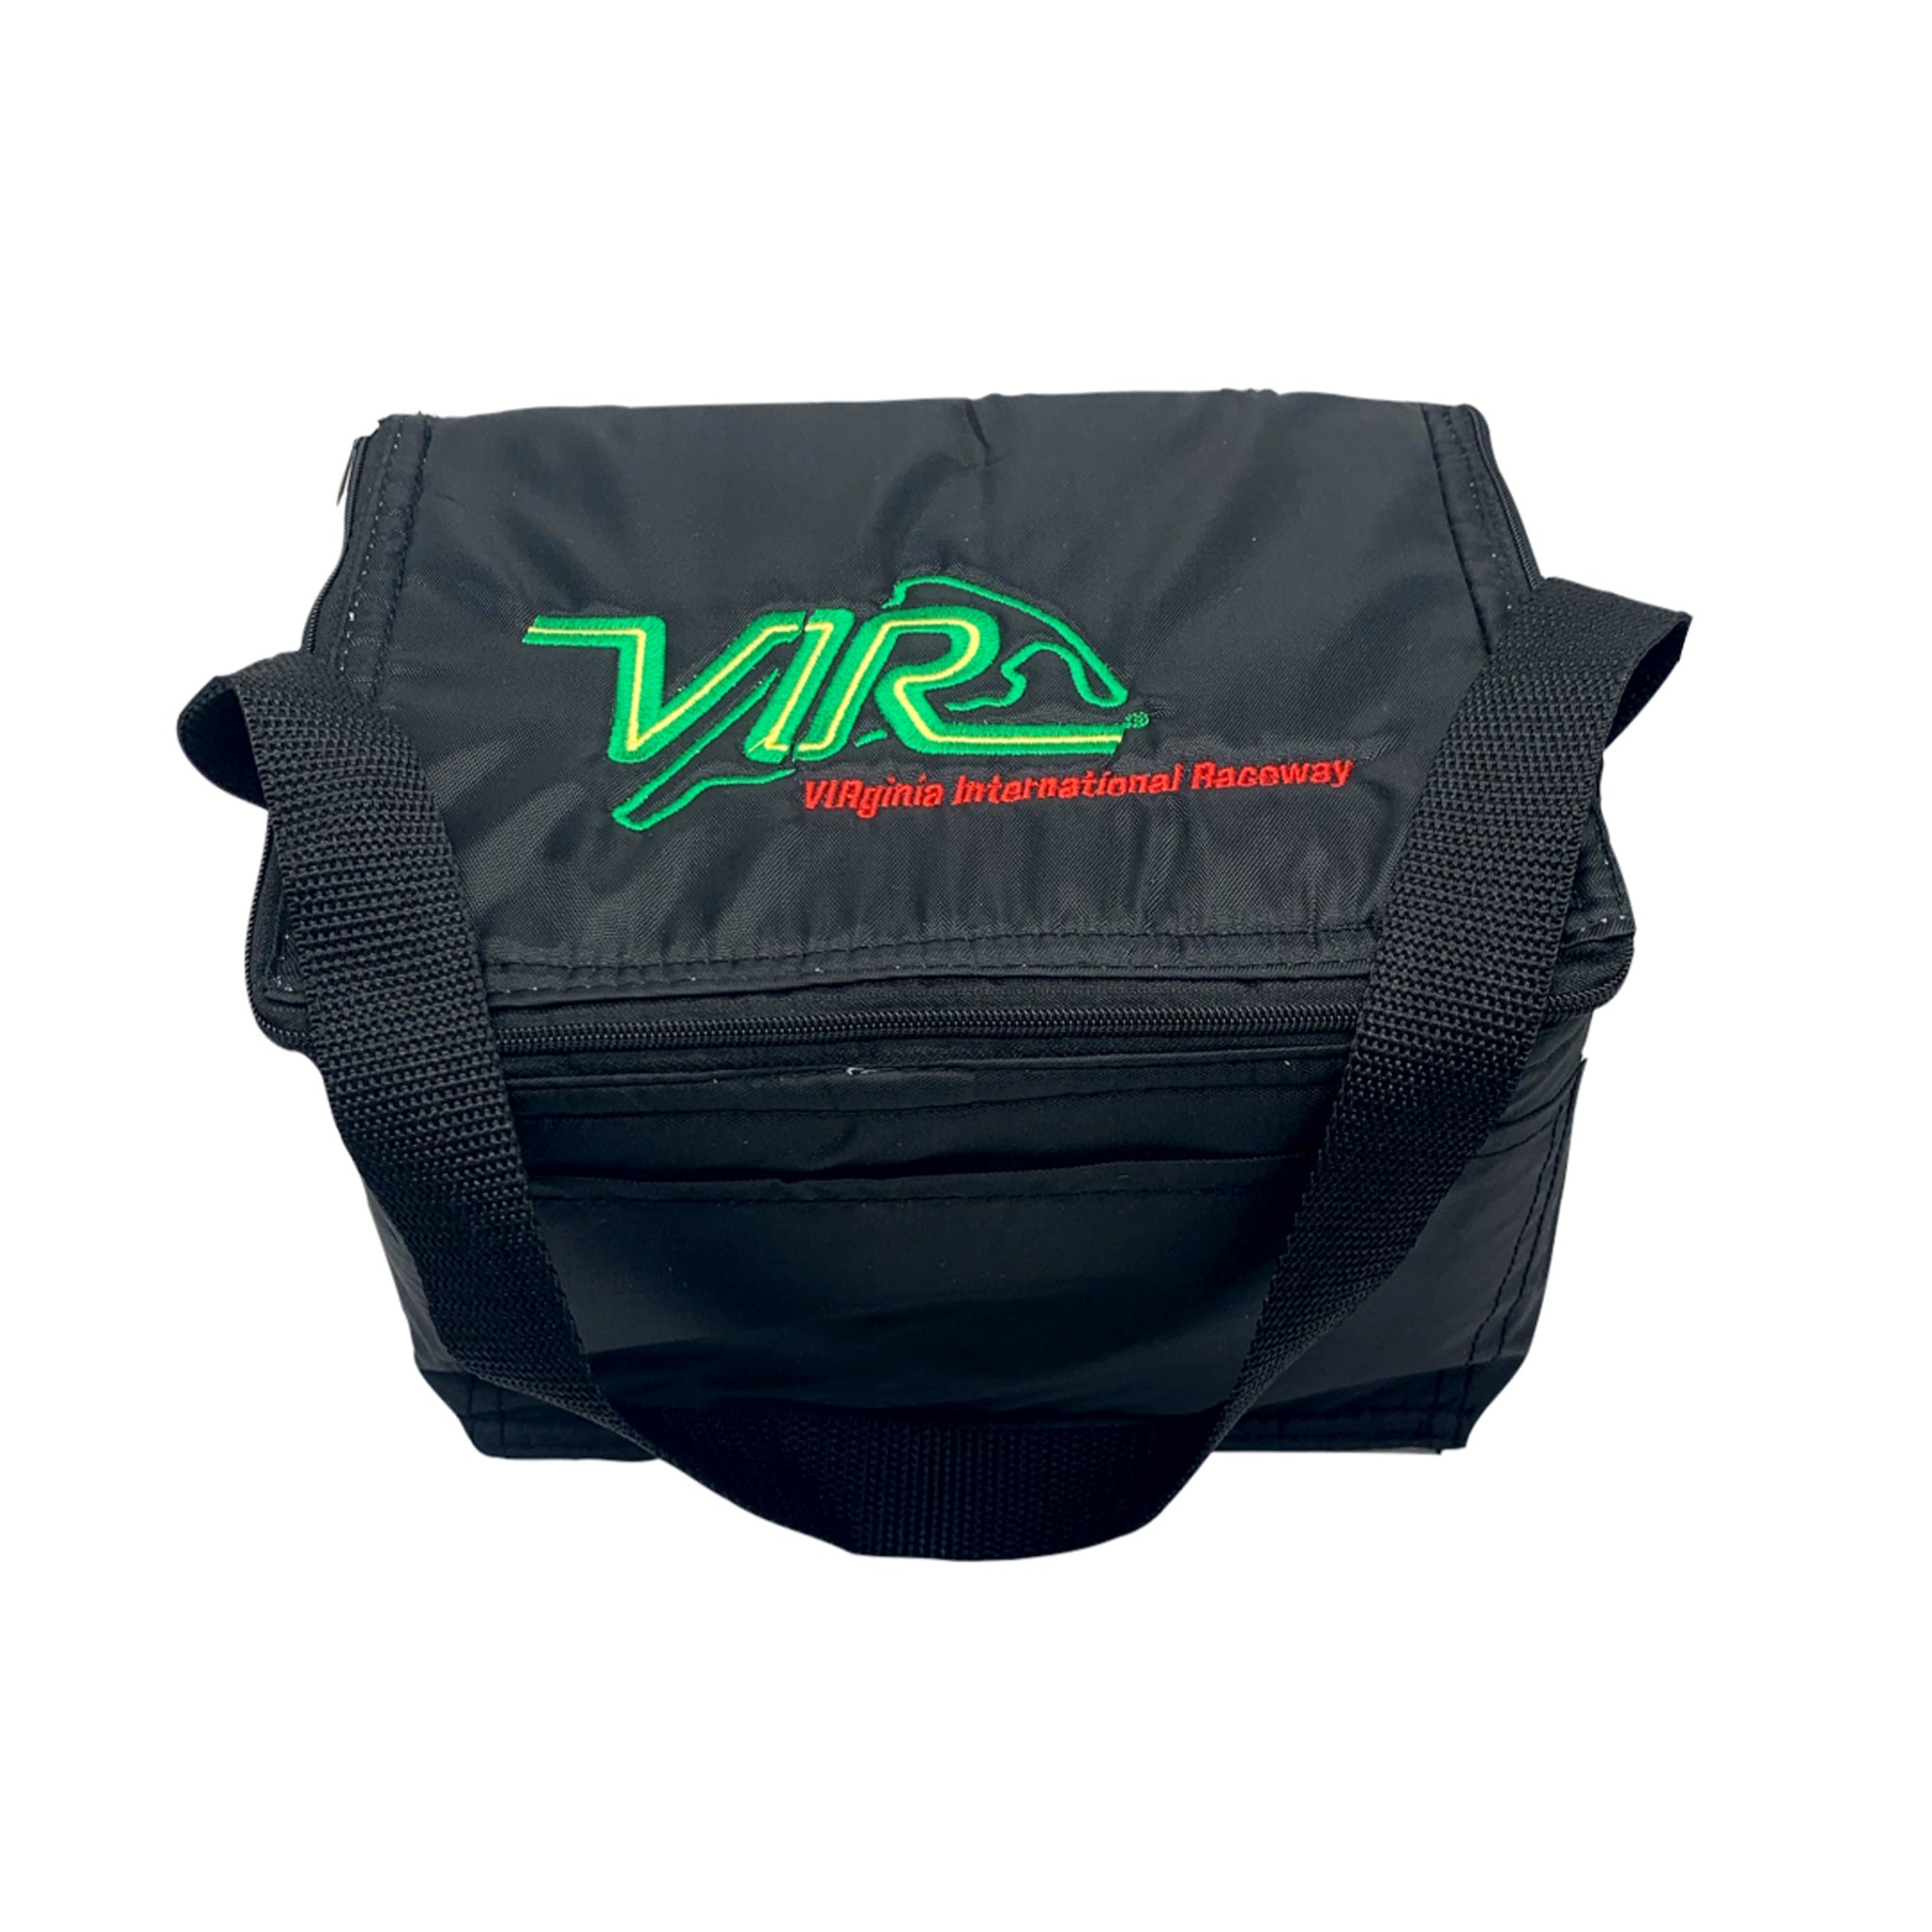 VIR Cooler - 6-pack Size